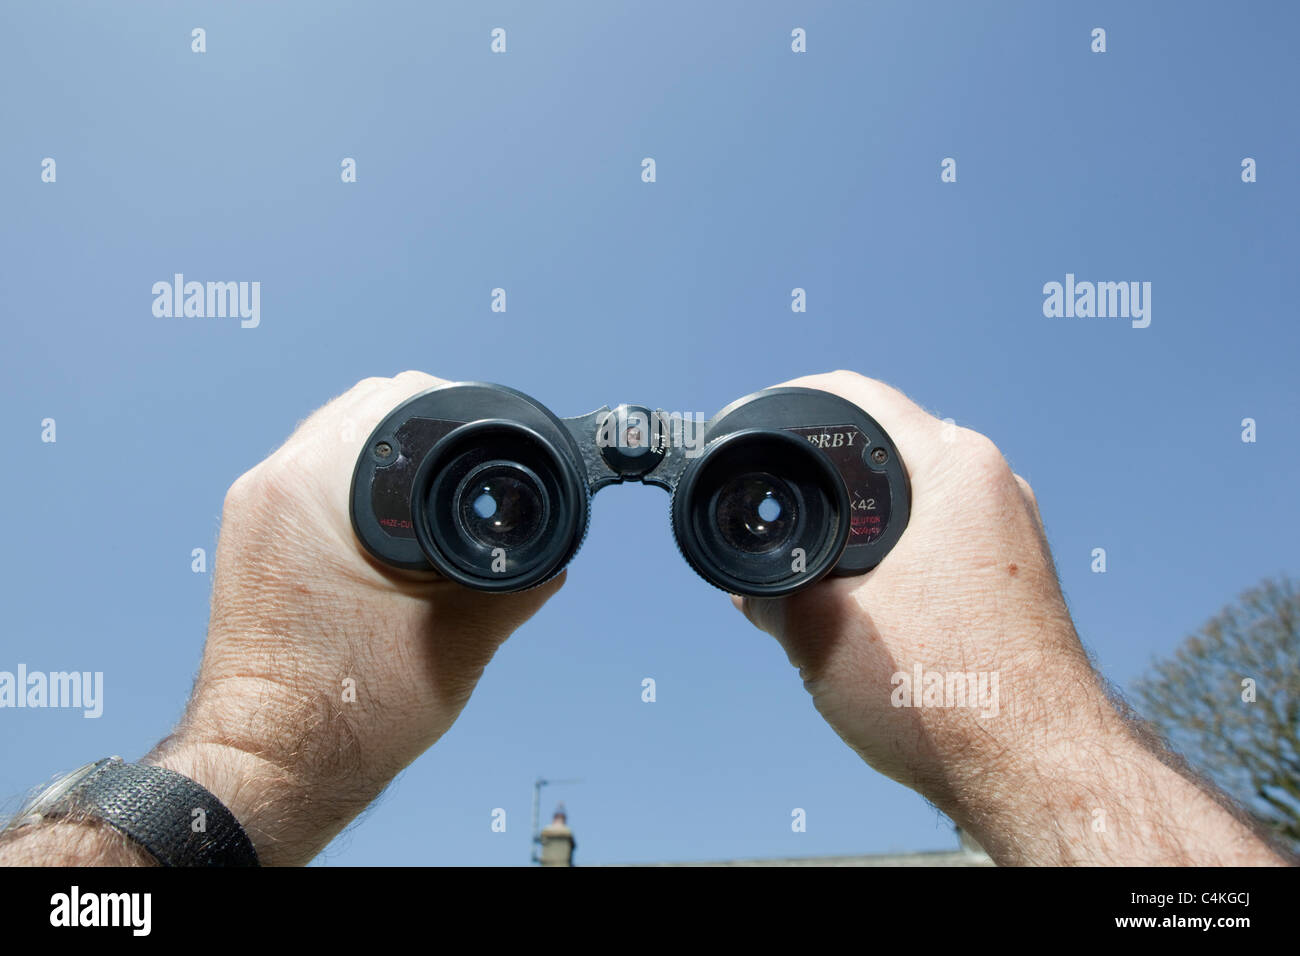 View of binoculars Stock Photo